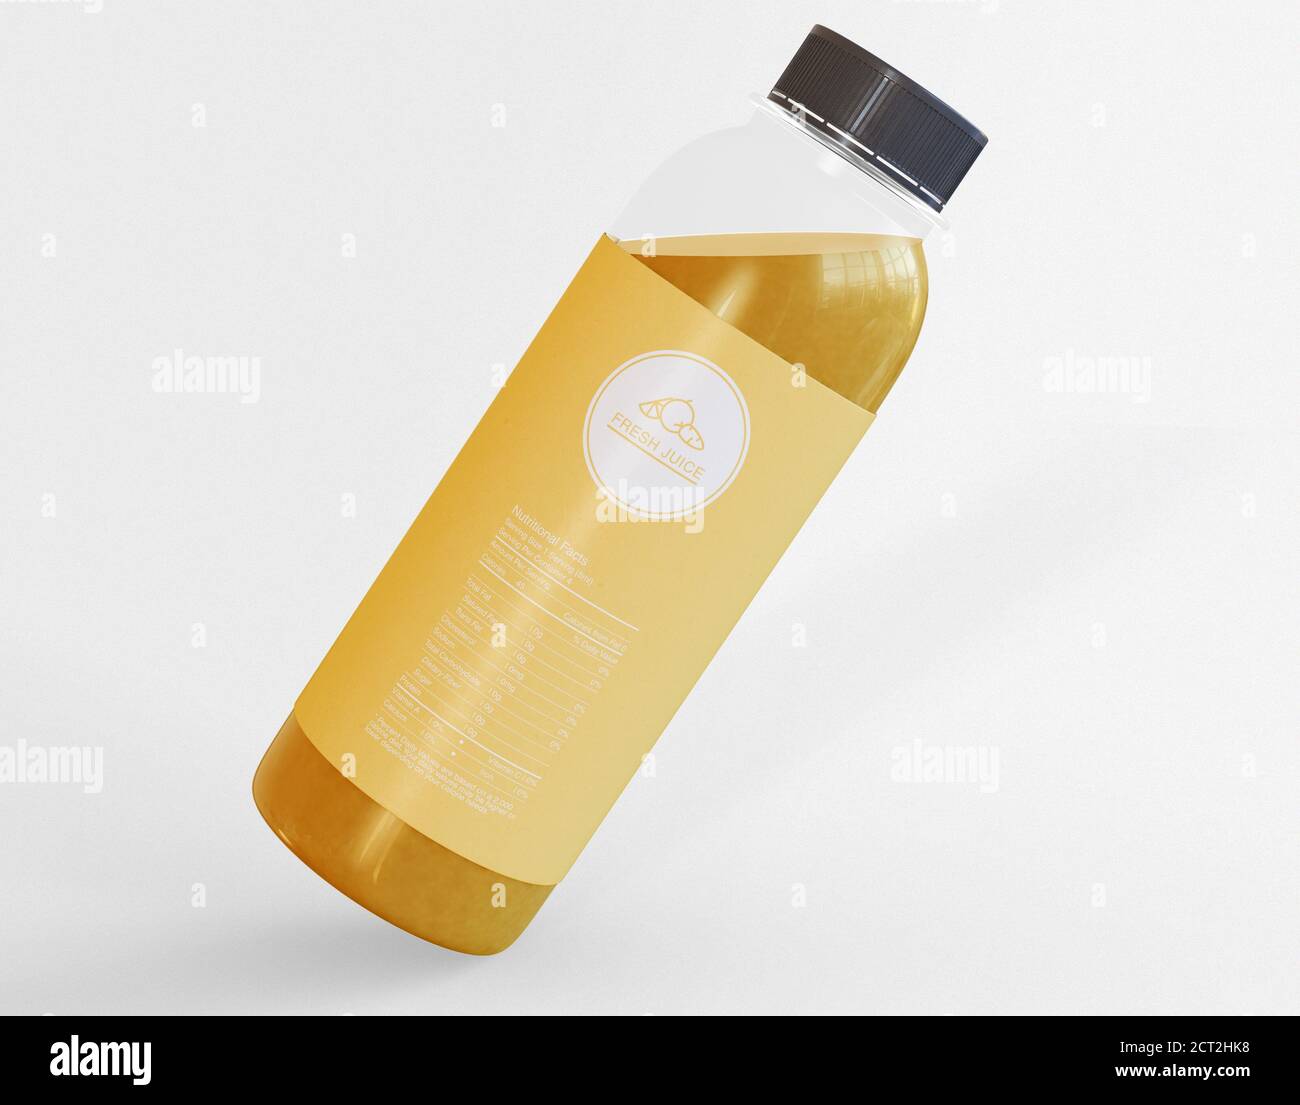 Illustrazione 3D. Bottiglia di succo fresco su fondo bianco isolato. Bevande naturali e rinfrescanti. Concetto di packaging e branding. Foto Stock